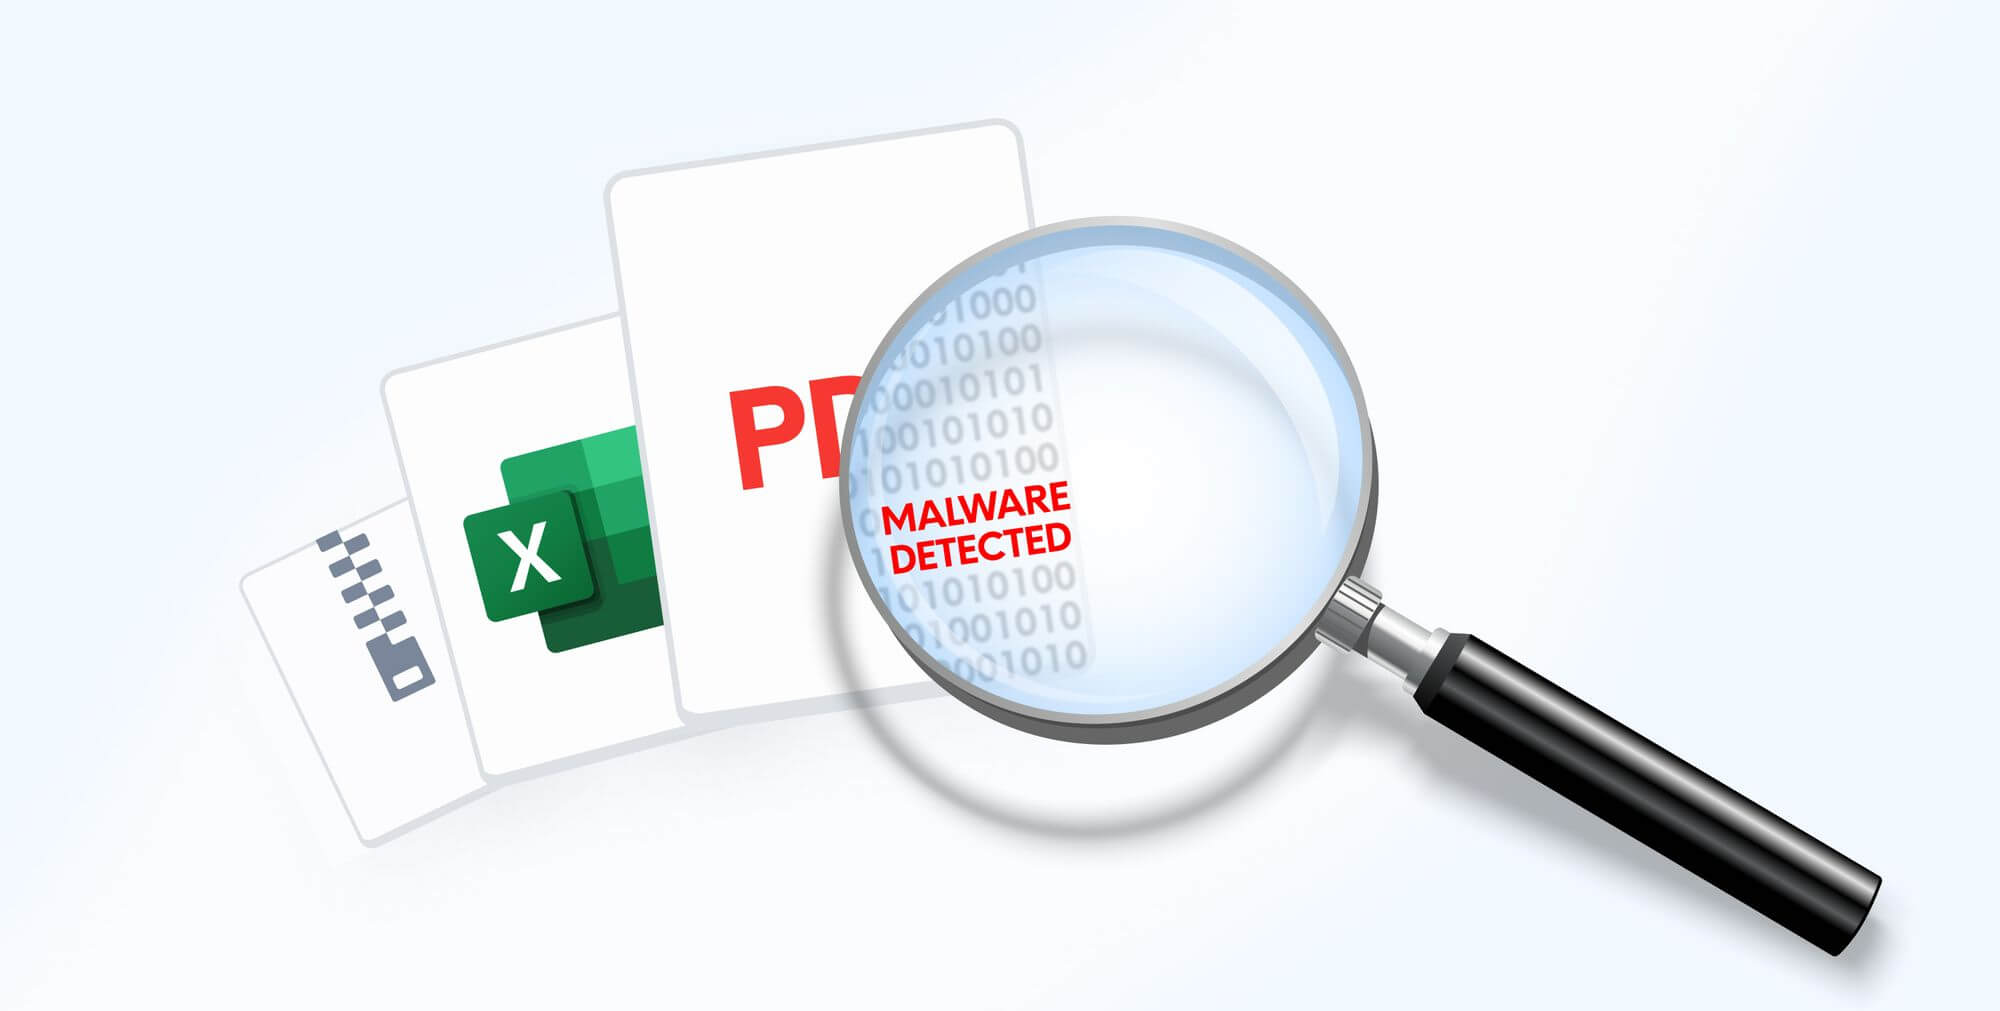 Malware and computer viruses